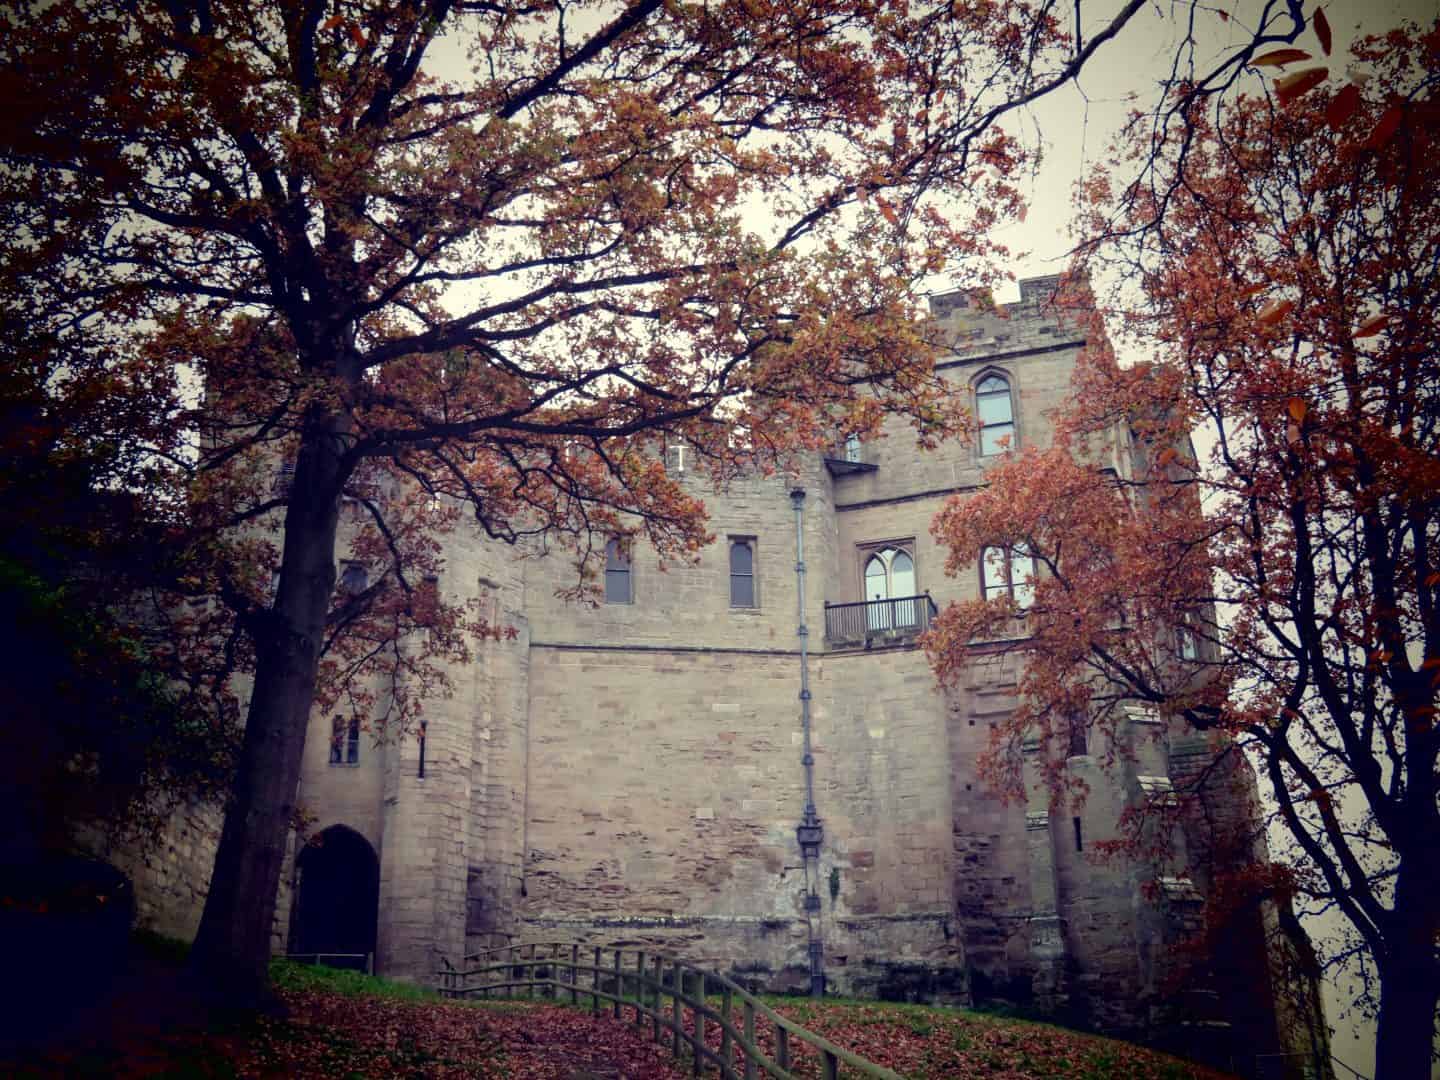 Warwick castle looking spooky in October half term for Halloween